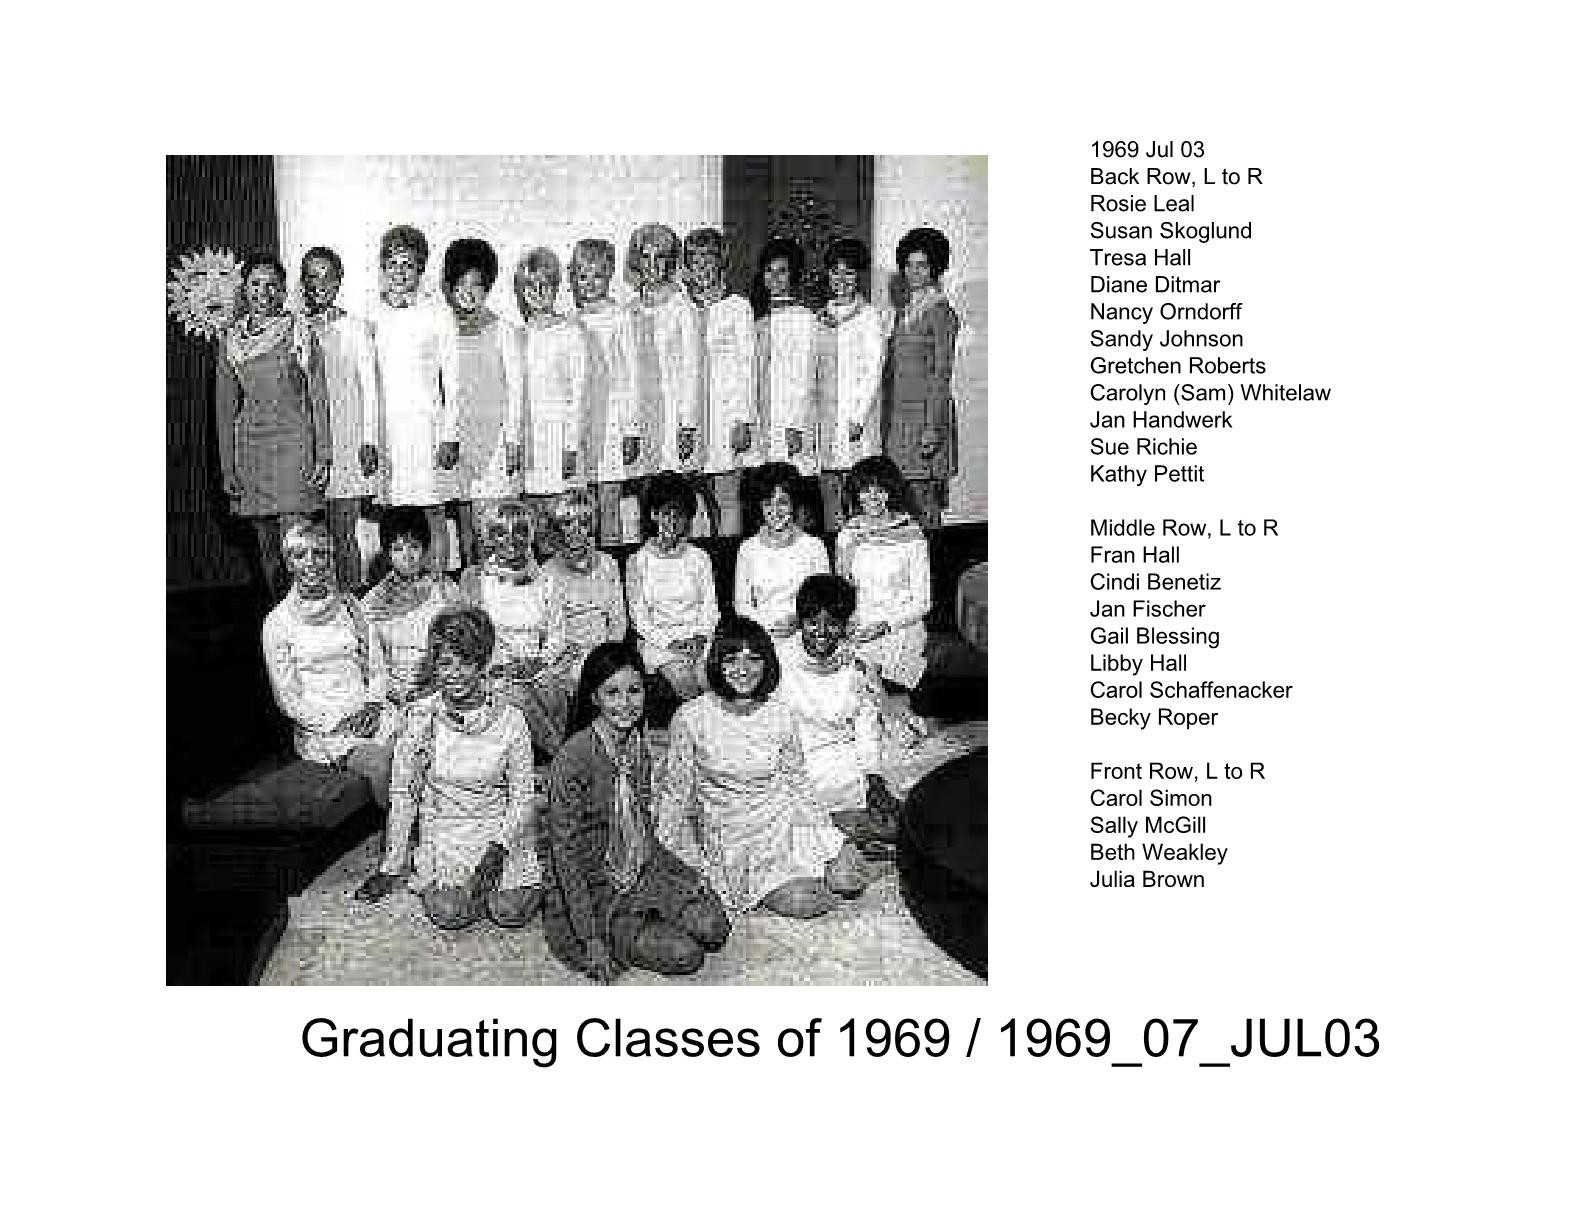 1970s classes